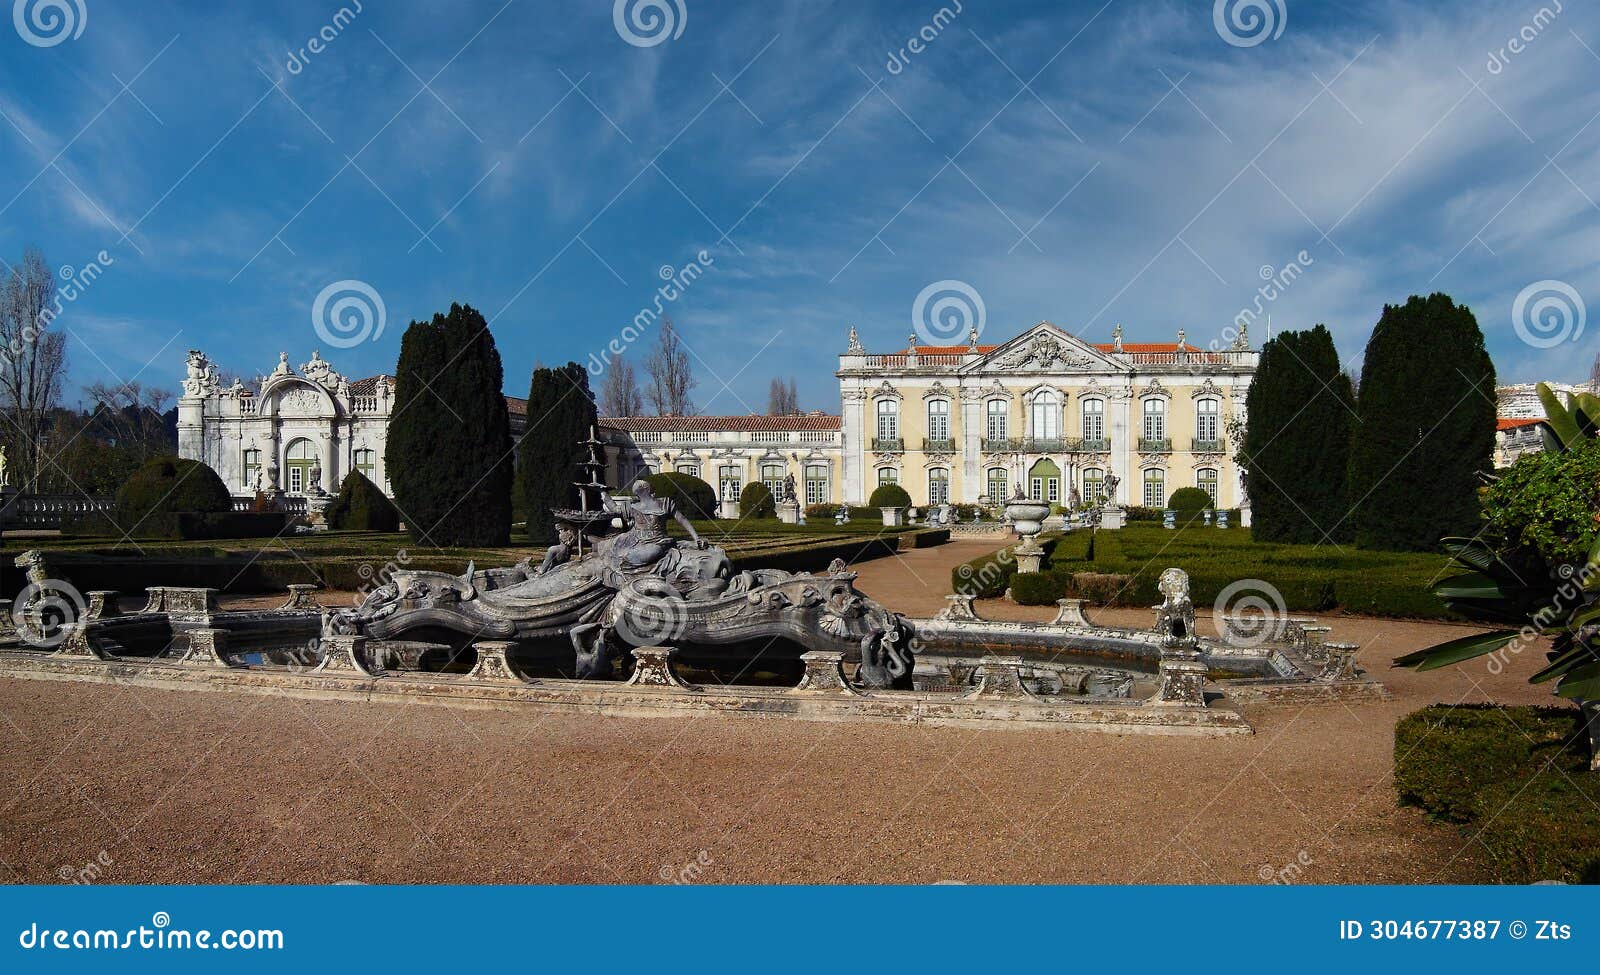 palacio nacional de queluz national palace. amphitrite or nereidas lake in neptune gardens.